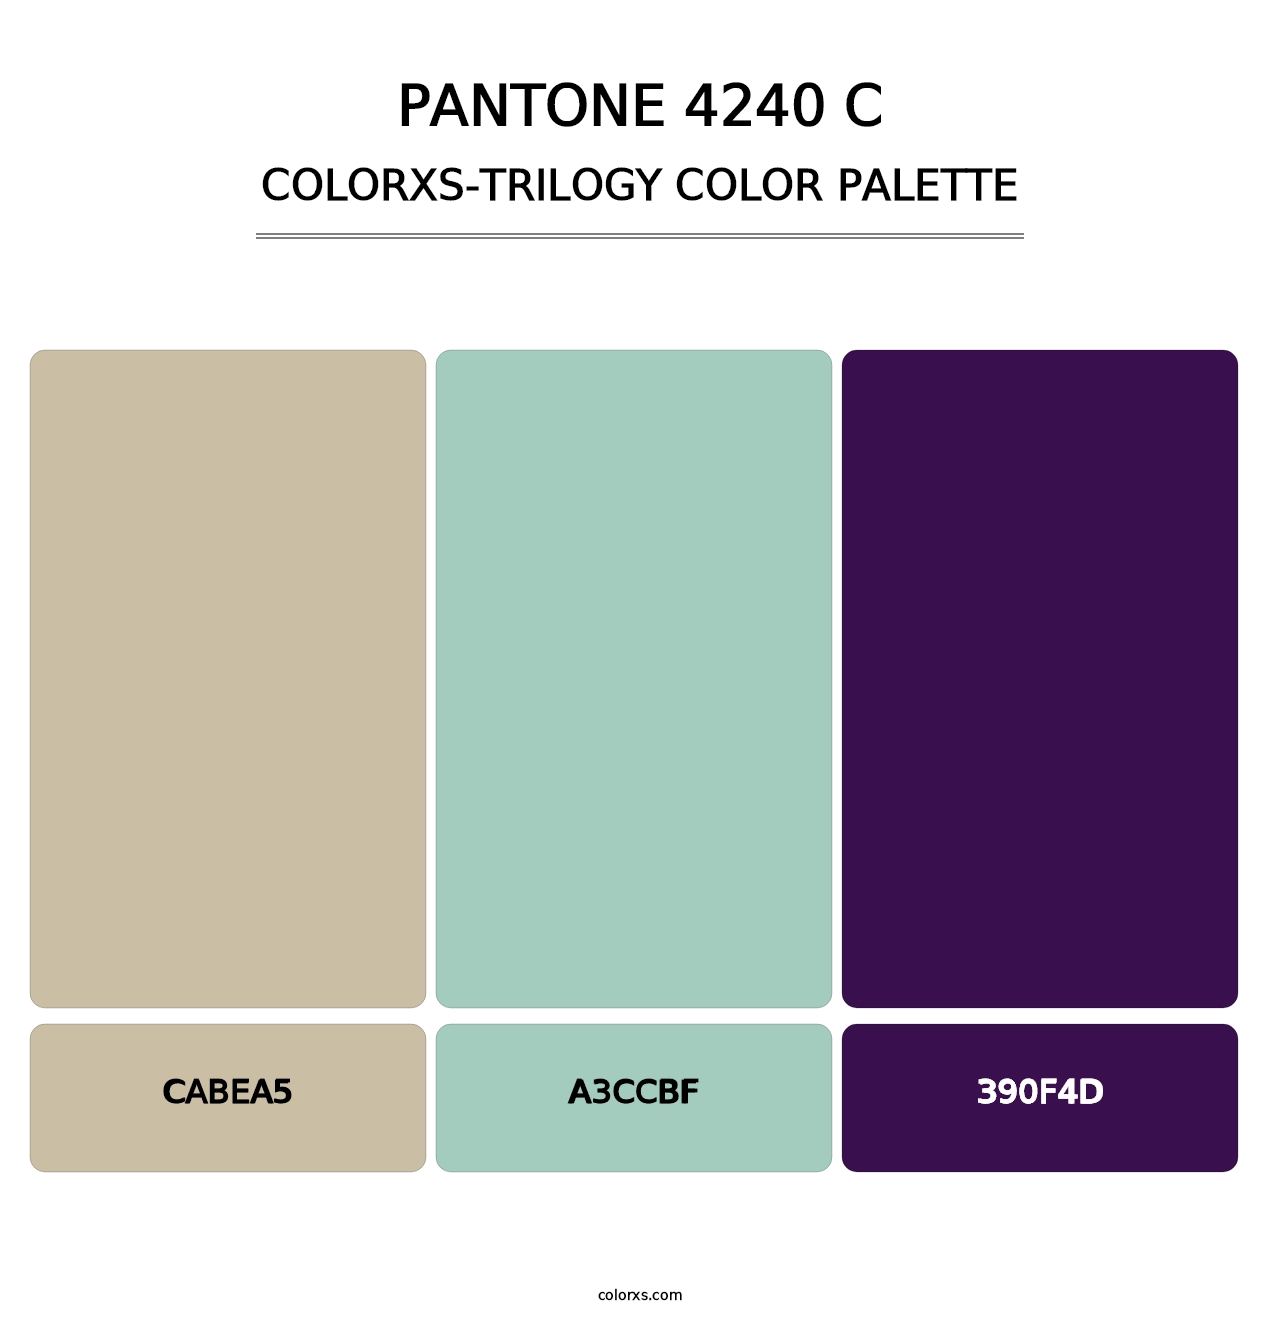 PANTONE 4240 C - Colorxs Trilogy Palette